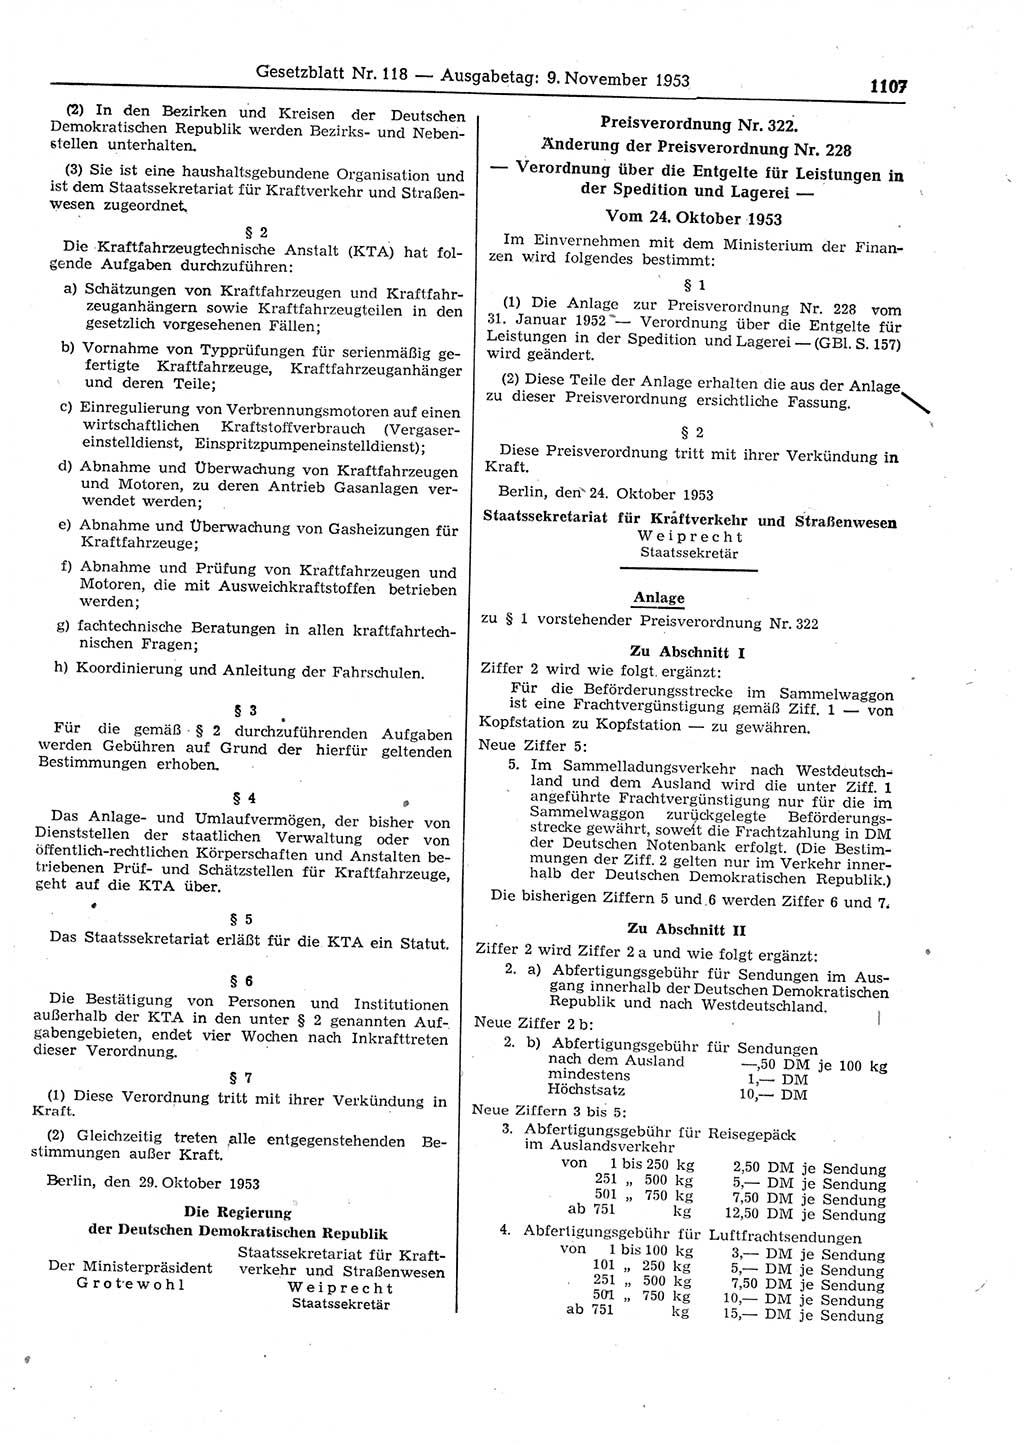 Gesetzblatt (GBl.) der Deutschen Demokratischen Republik (DDR) 1953, Seite 1107 (GBl. DDR 1953, S. 1107)